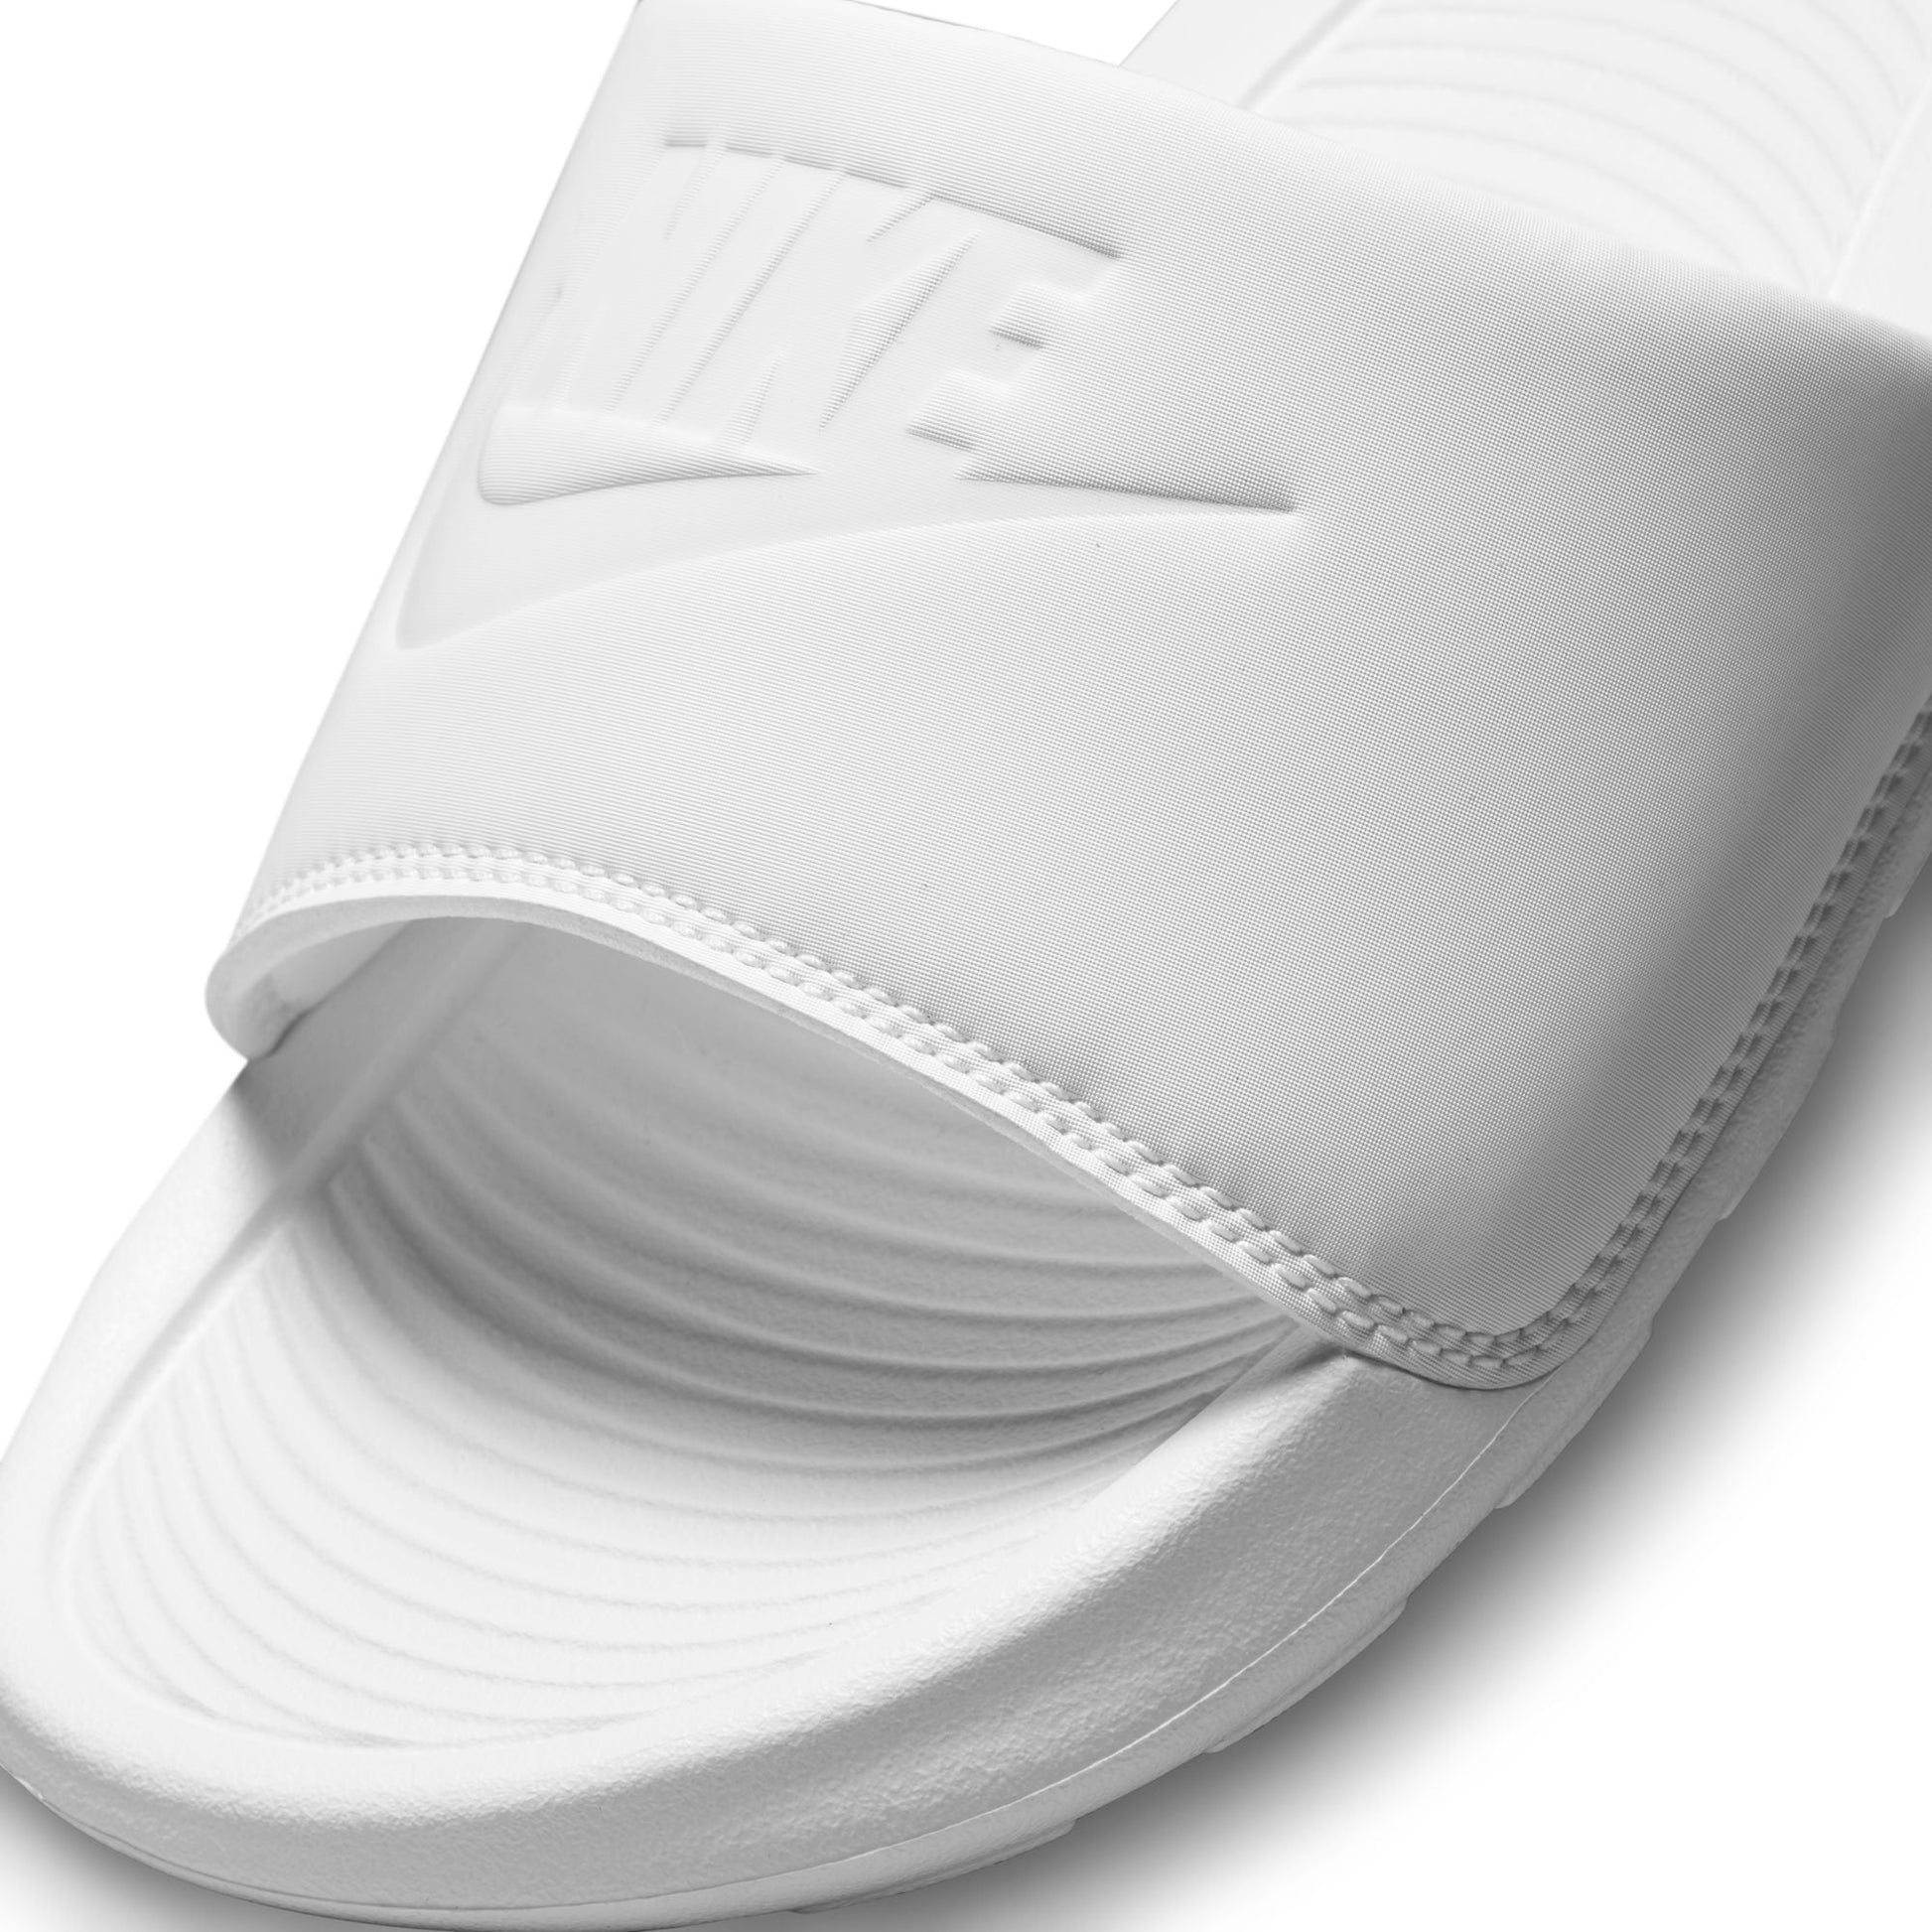 Nike SB - Victori One Slide - White/White - Velocity 21